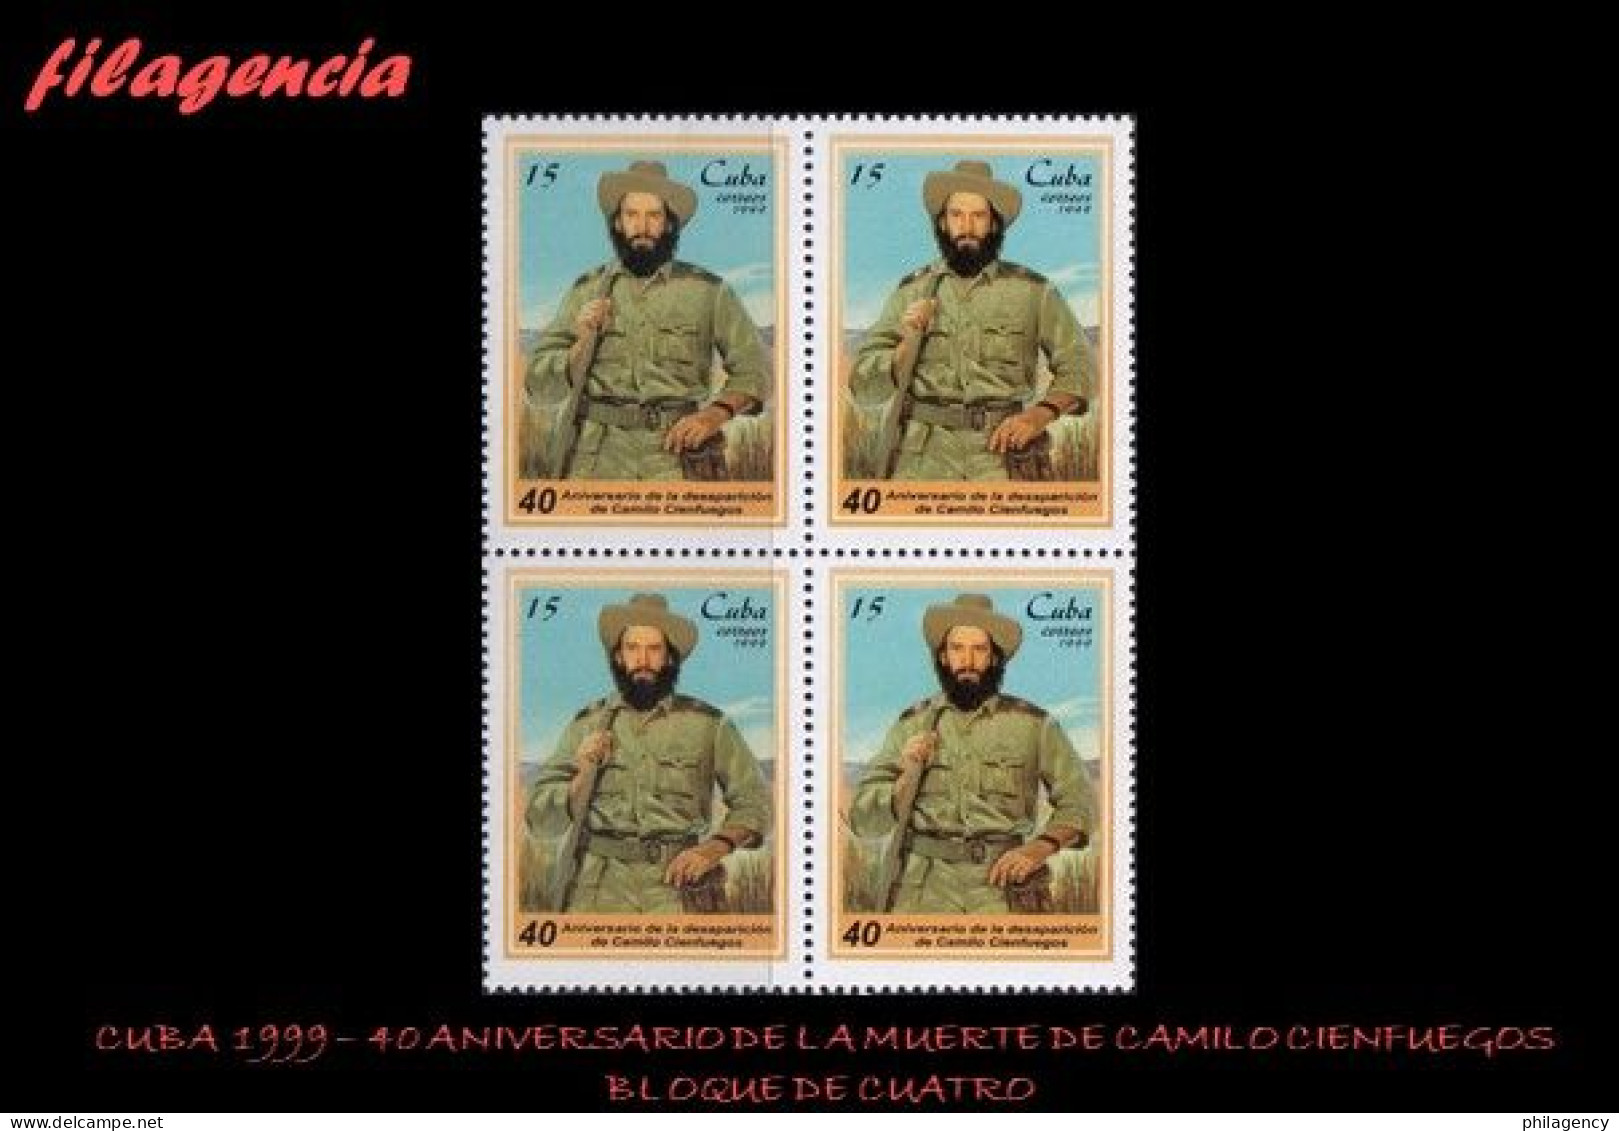 CUBA. BLOQUES DE CUATRO. 1999-26 40 ANIVERSARIO DE LA MUERTE DE CAMILO CIENFUEGOS - Unused Stamps